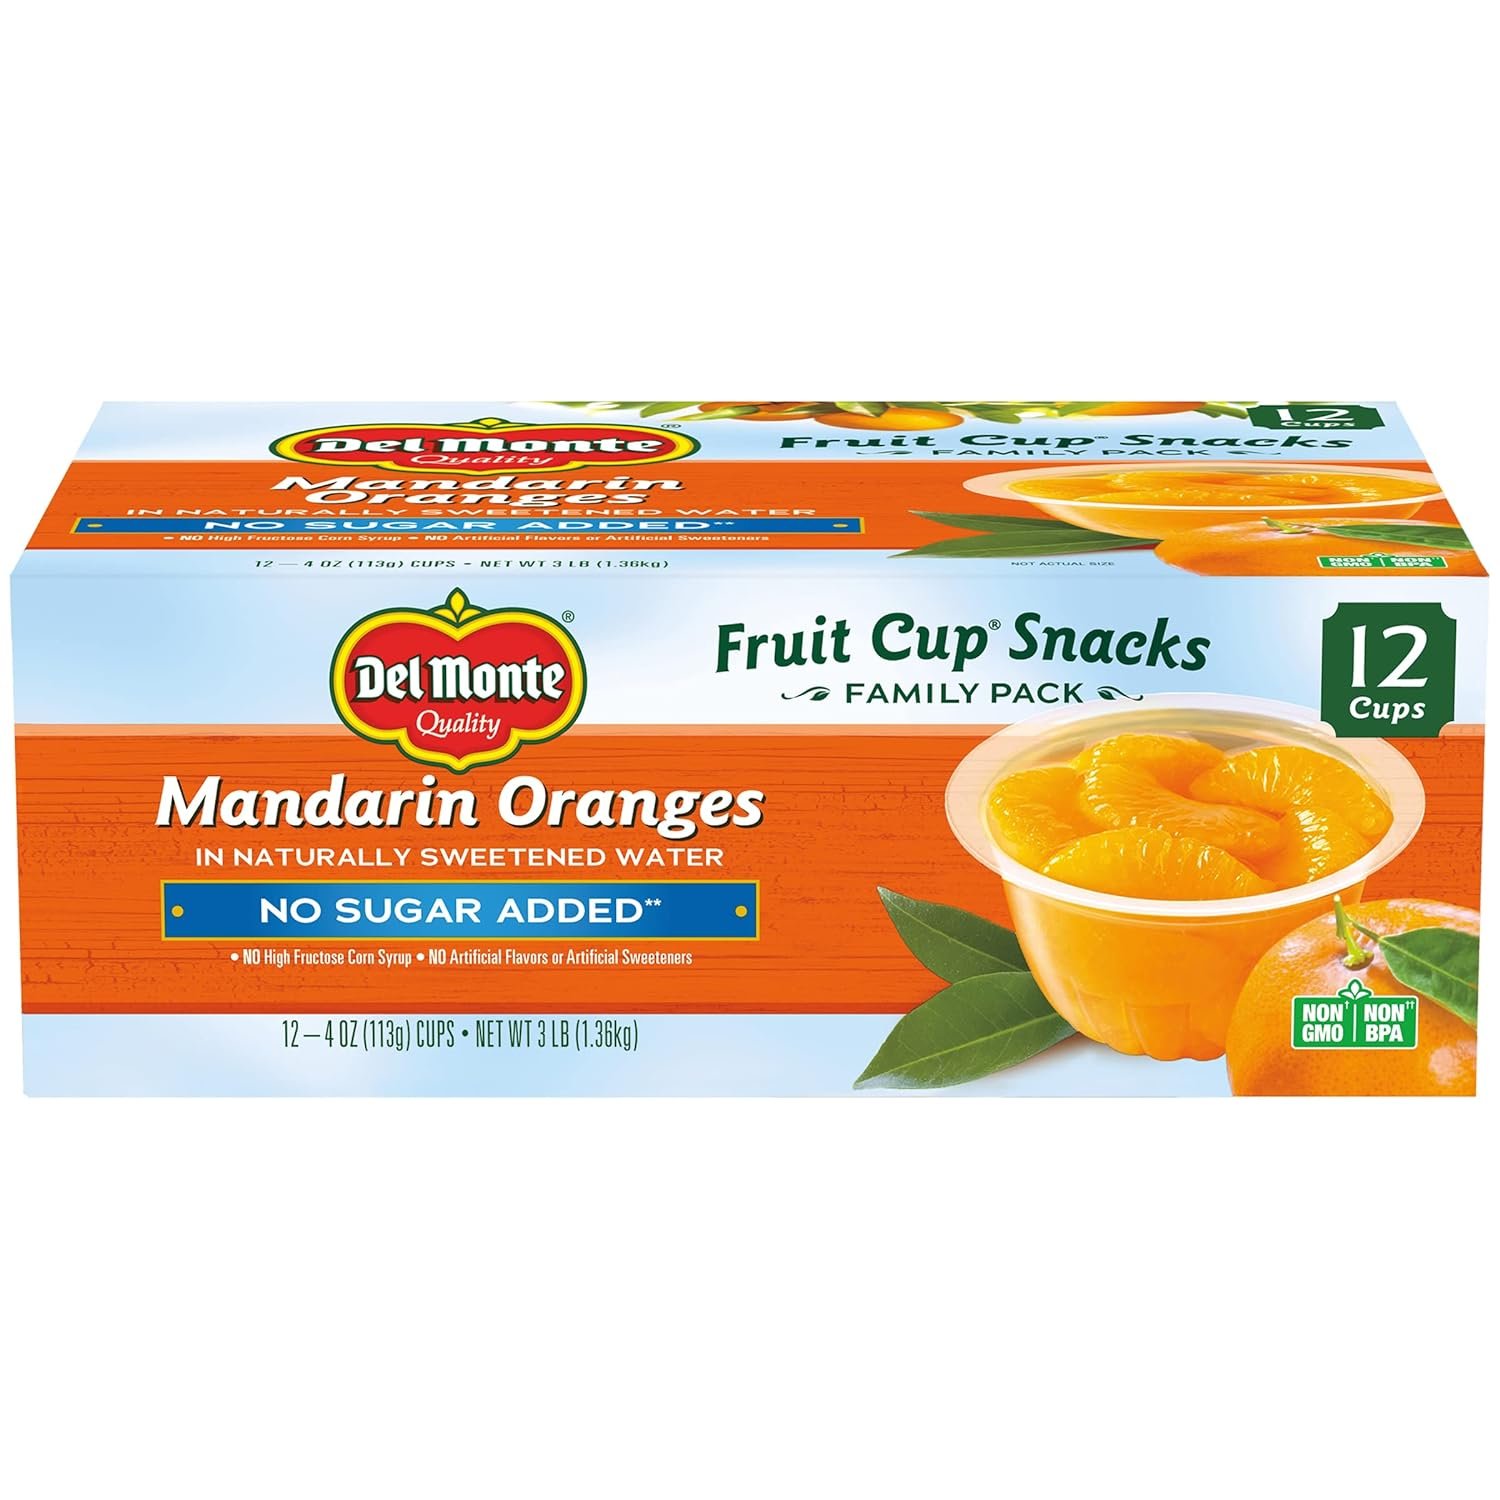 Mandarin Oranges*